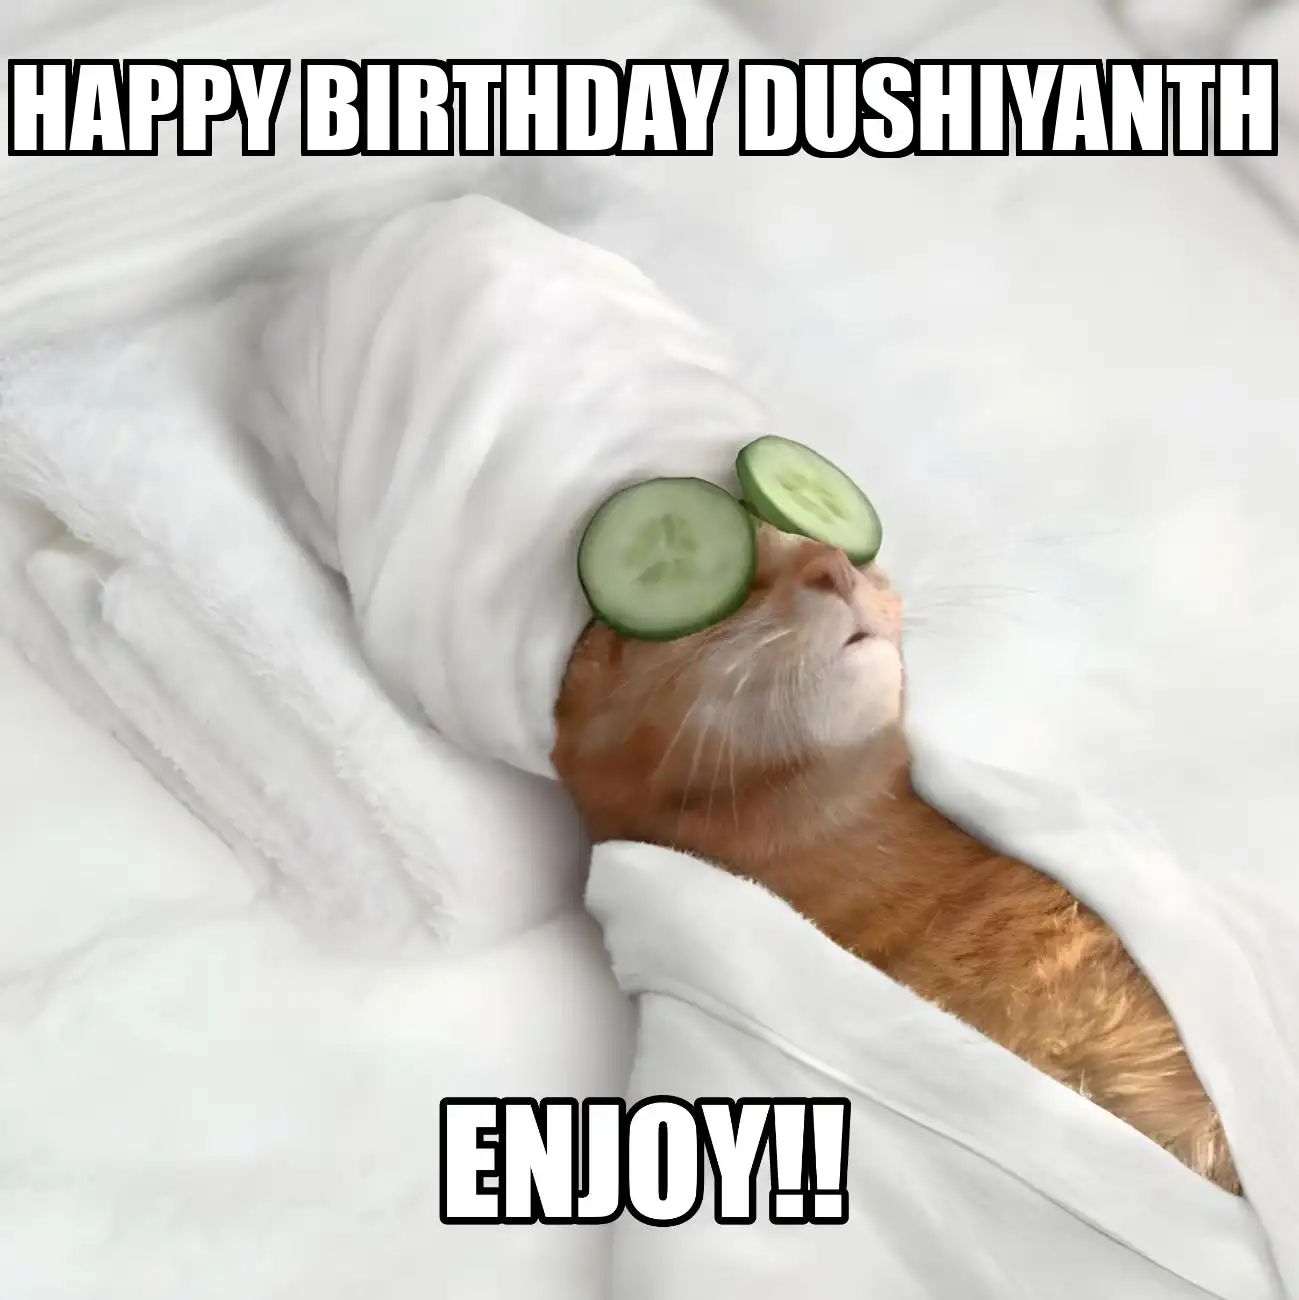 Happy Birthday Dushiyanth Enjoy Cat Meme